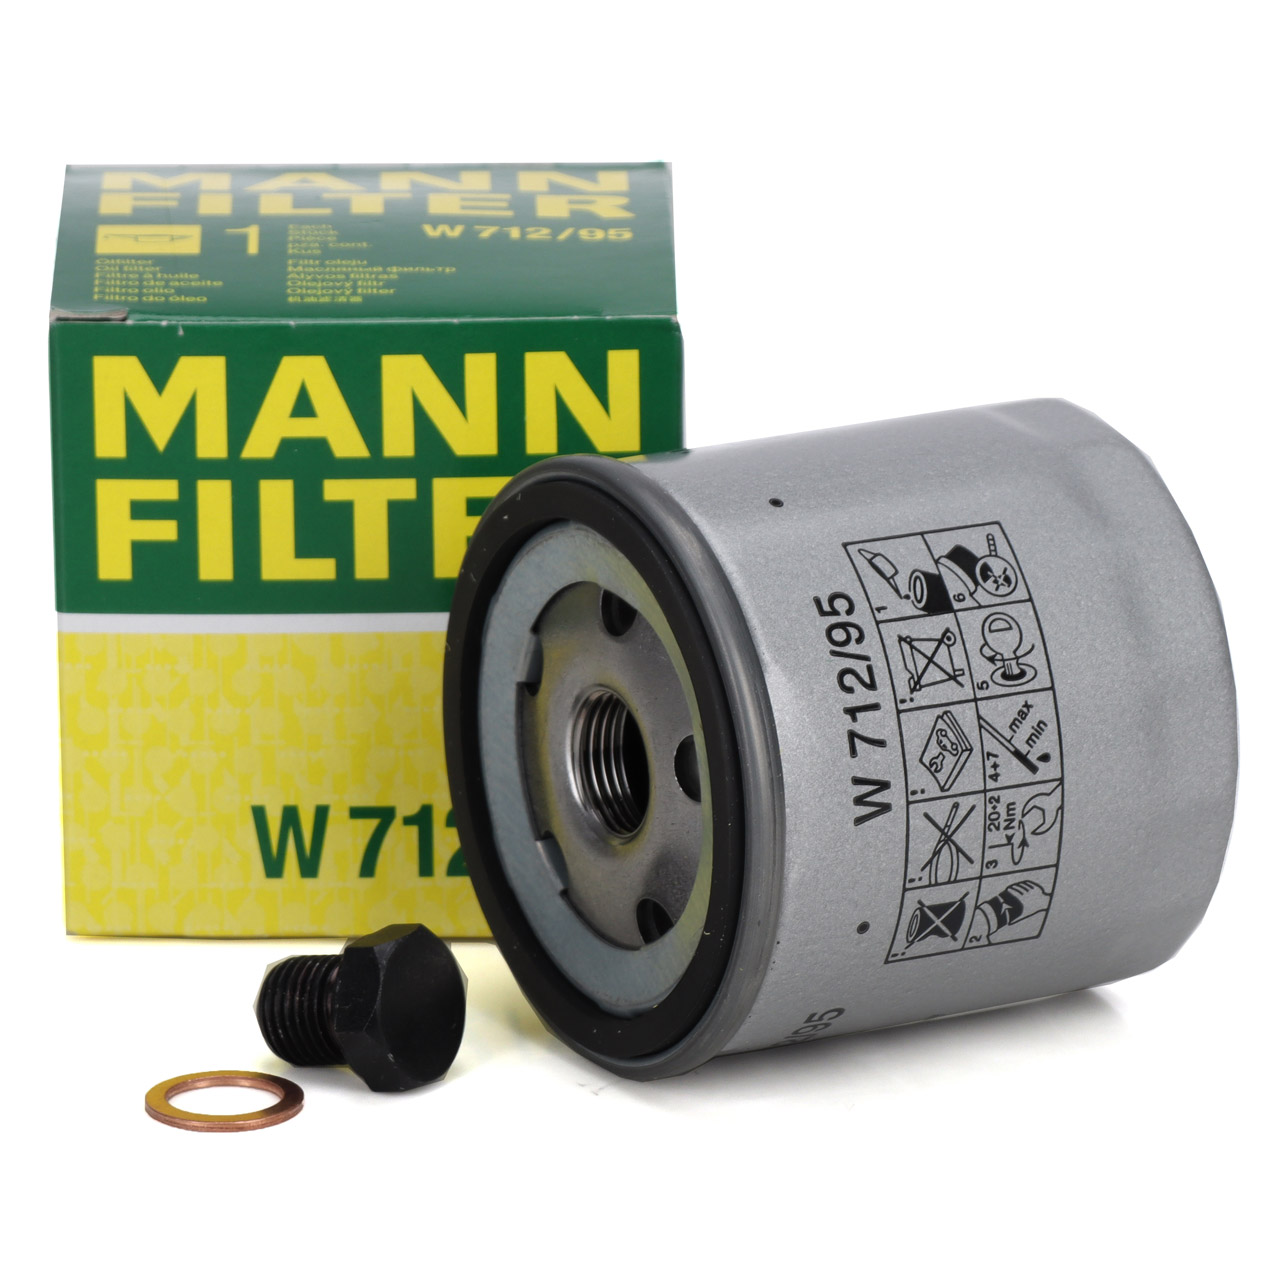 MANN-FILTER Ölfilter - W 712/95, GOA 012 